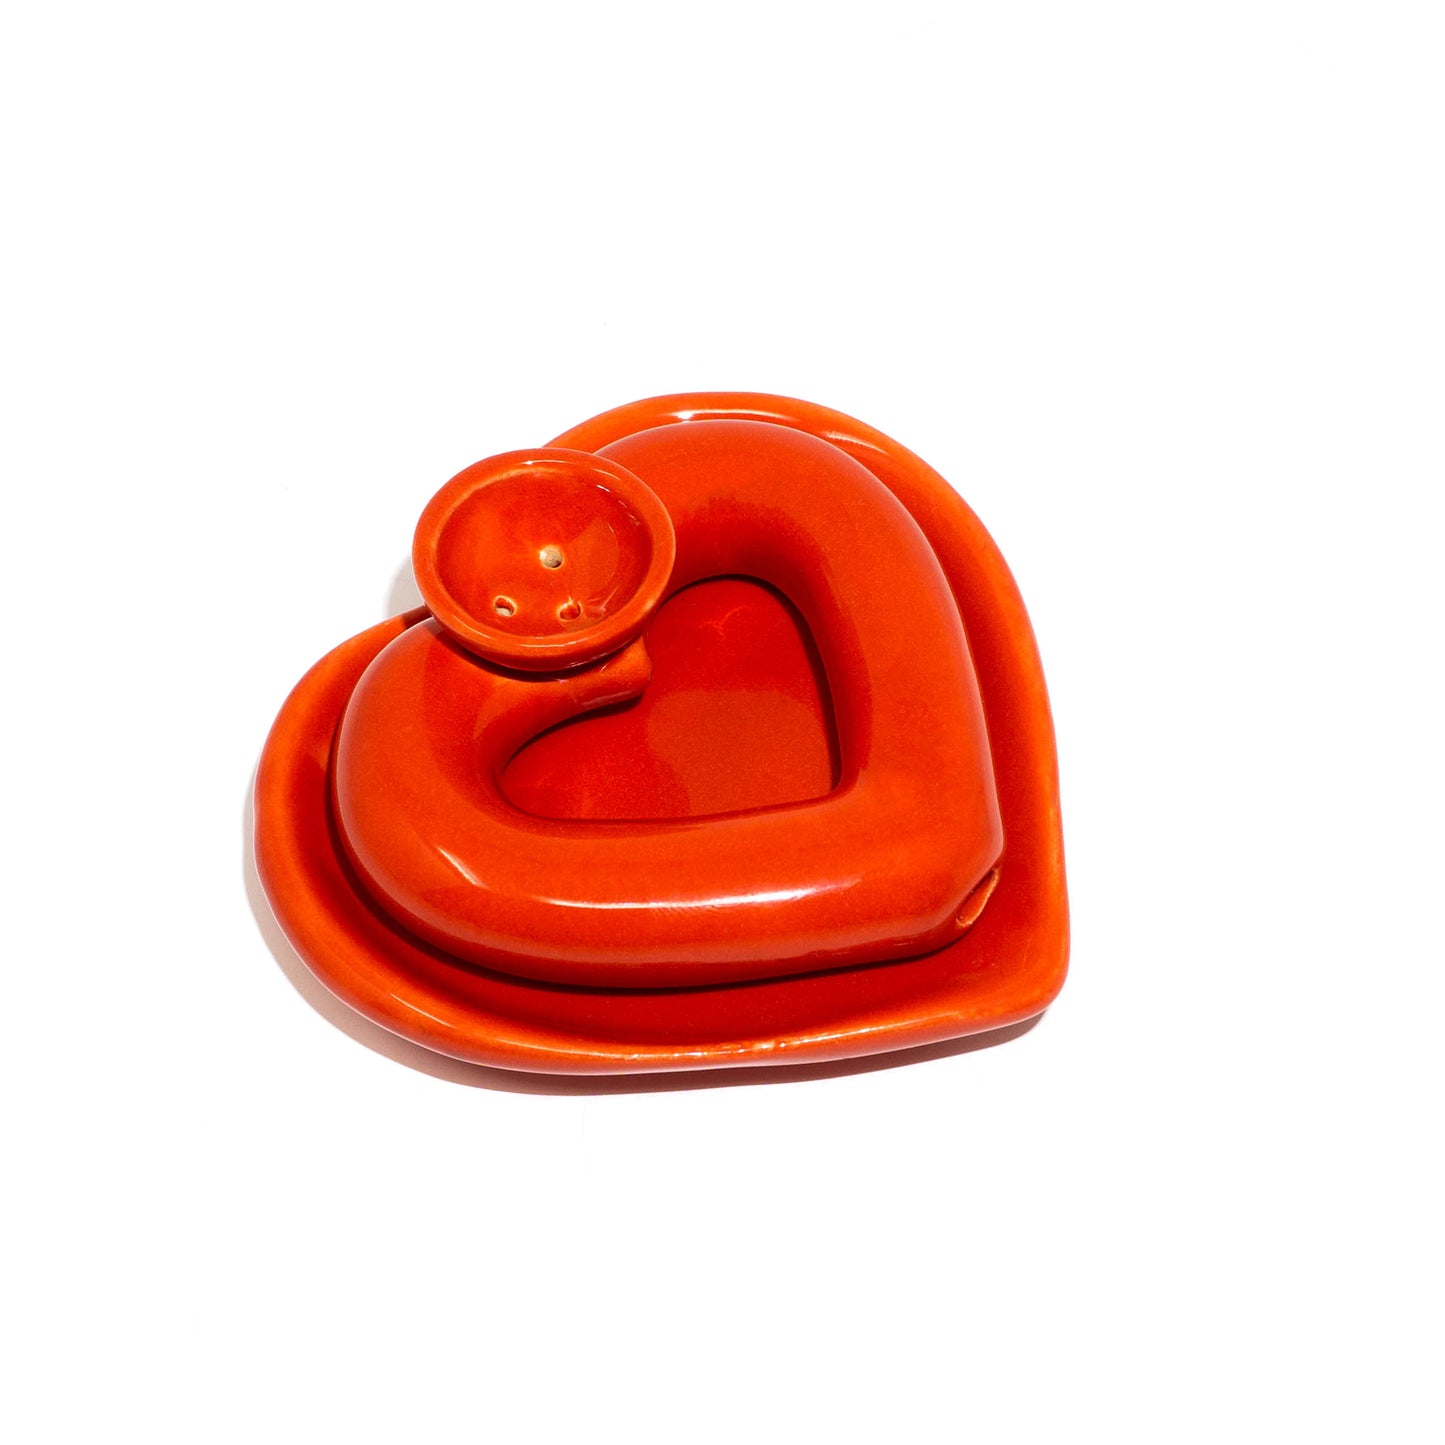 Red Heart Trinket Dish / Ashtray